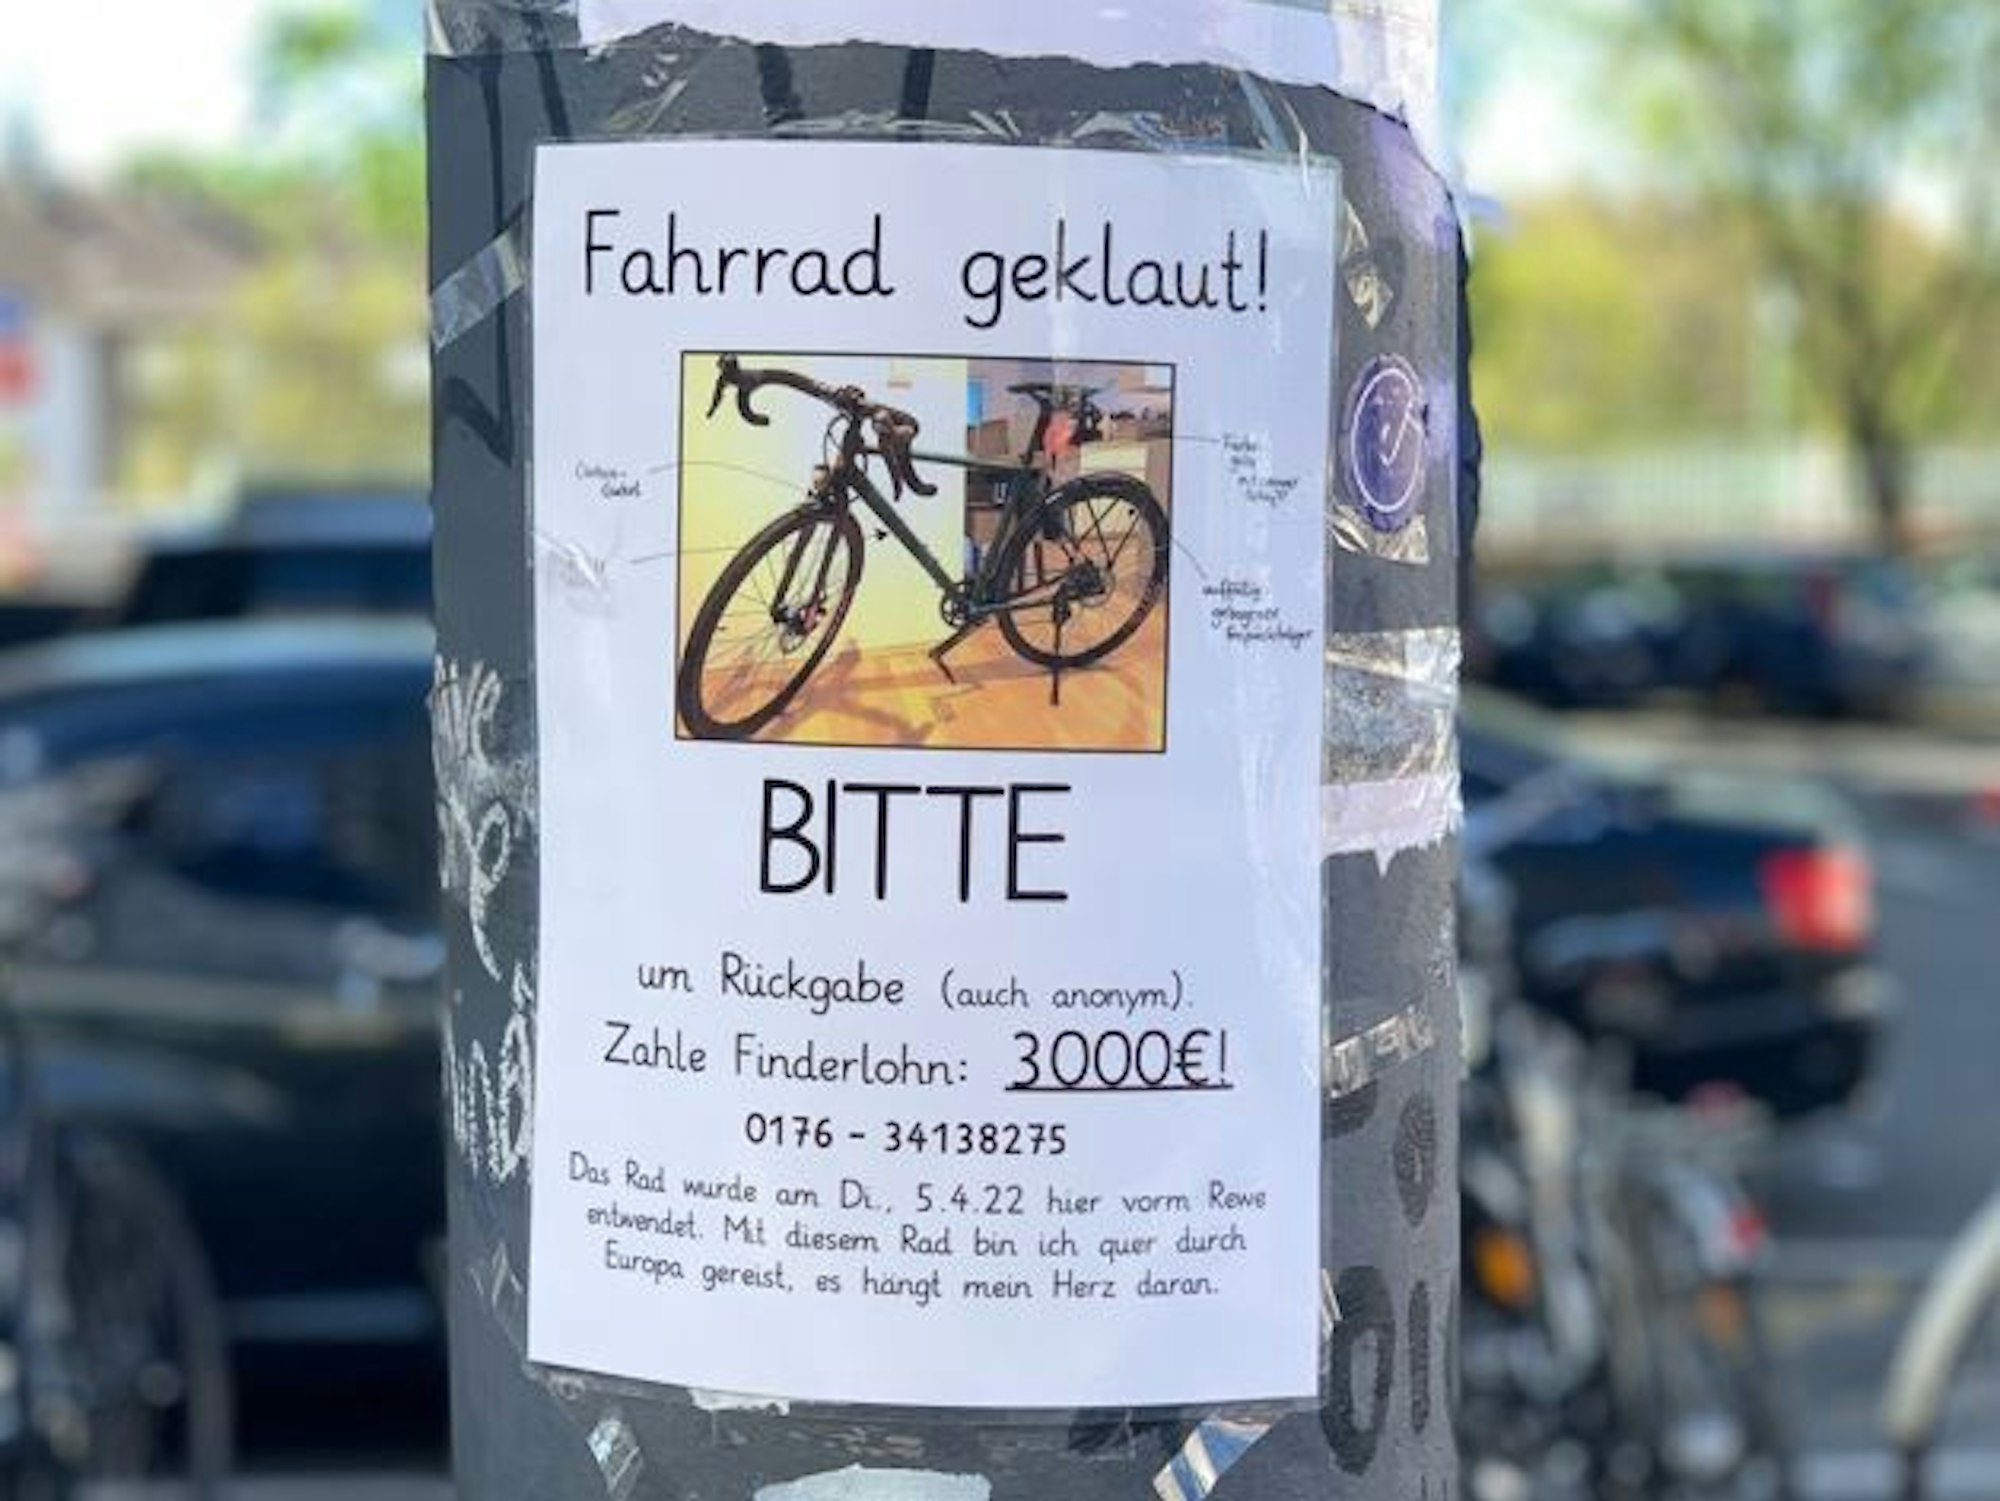 Ein Zettel mit einem Foto von einem Fahrrad hängt an einem Laternenmast.Mit diesem Foto sucht Moritz Fischer (40) nach seinem geklauten Fahrrad. Dem Finder verspricht er 3000 Euro Finderlohn.